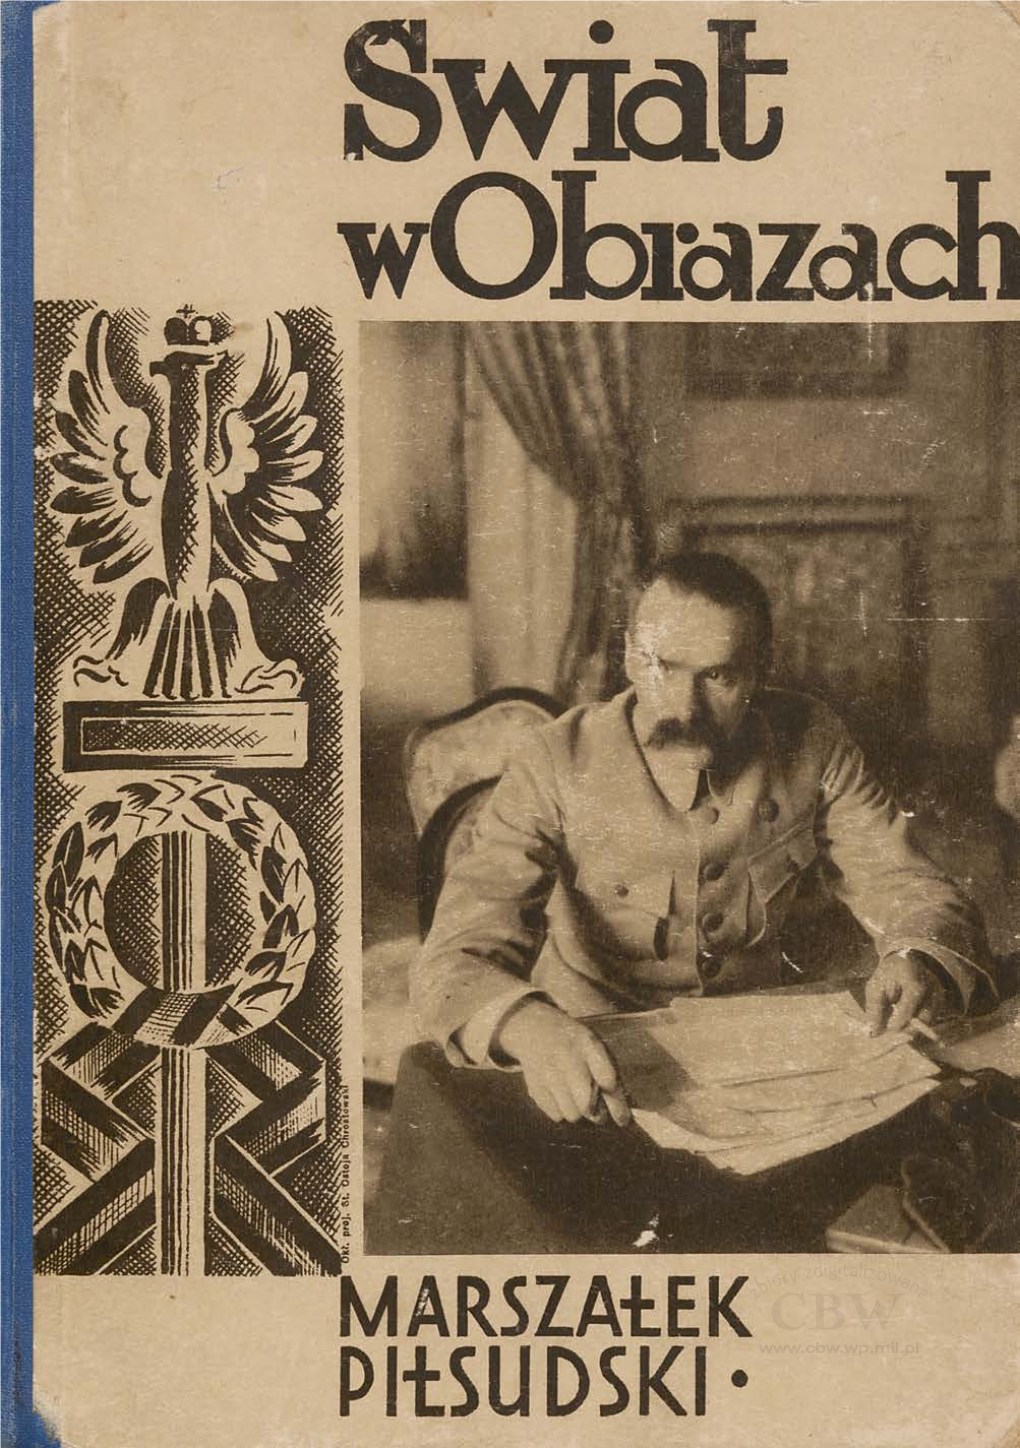 Marszałek Piłsudski